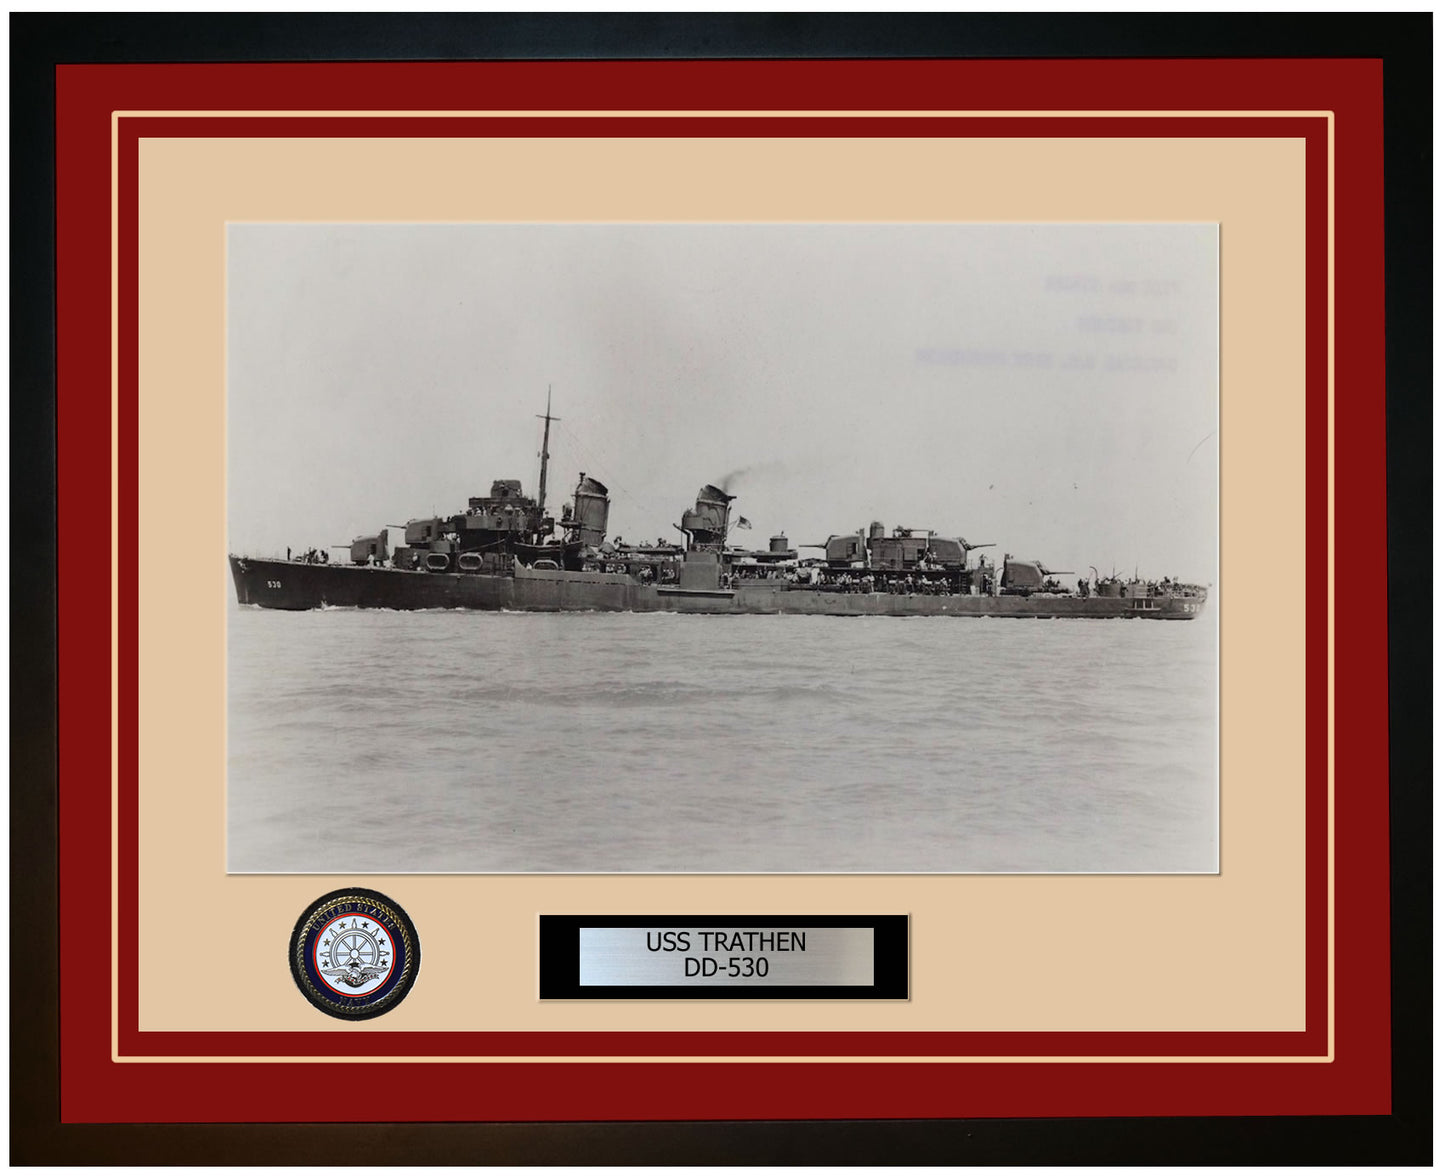 USS TRATHEN DD-530 Framed Navy Ship Photo Burgundy